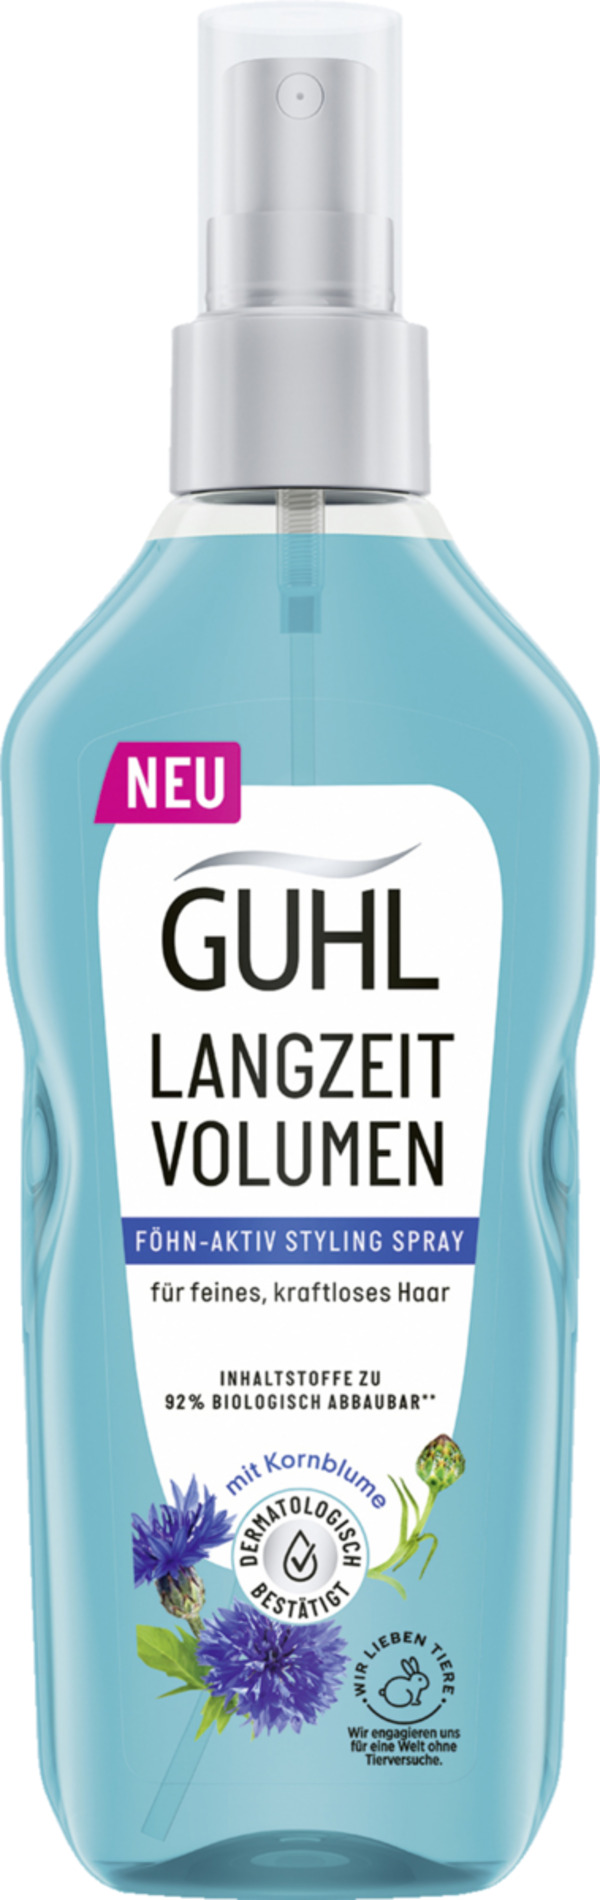 Bild 1 von Guhl Langzeit Volumen Föhn-Aktiv Styling Spray